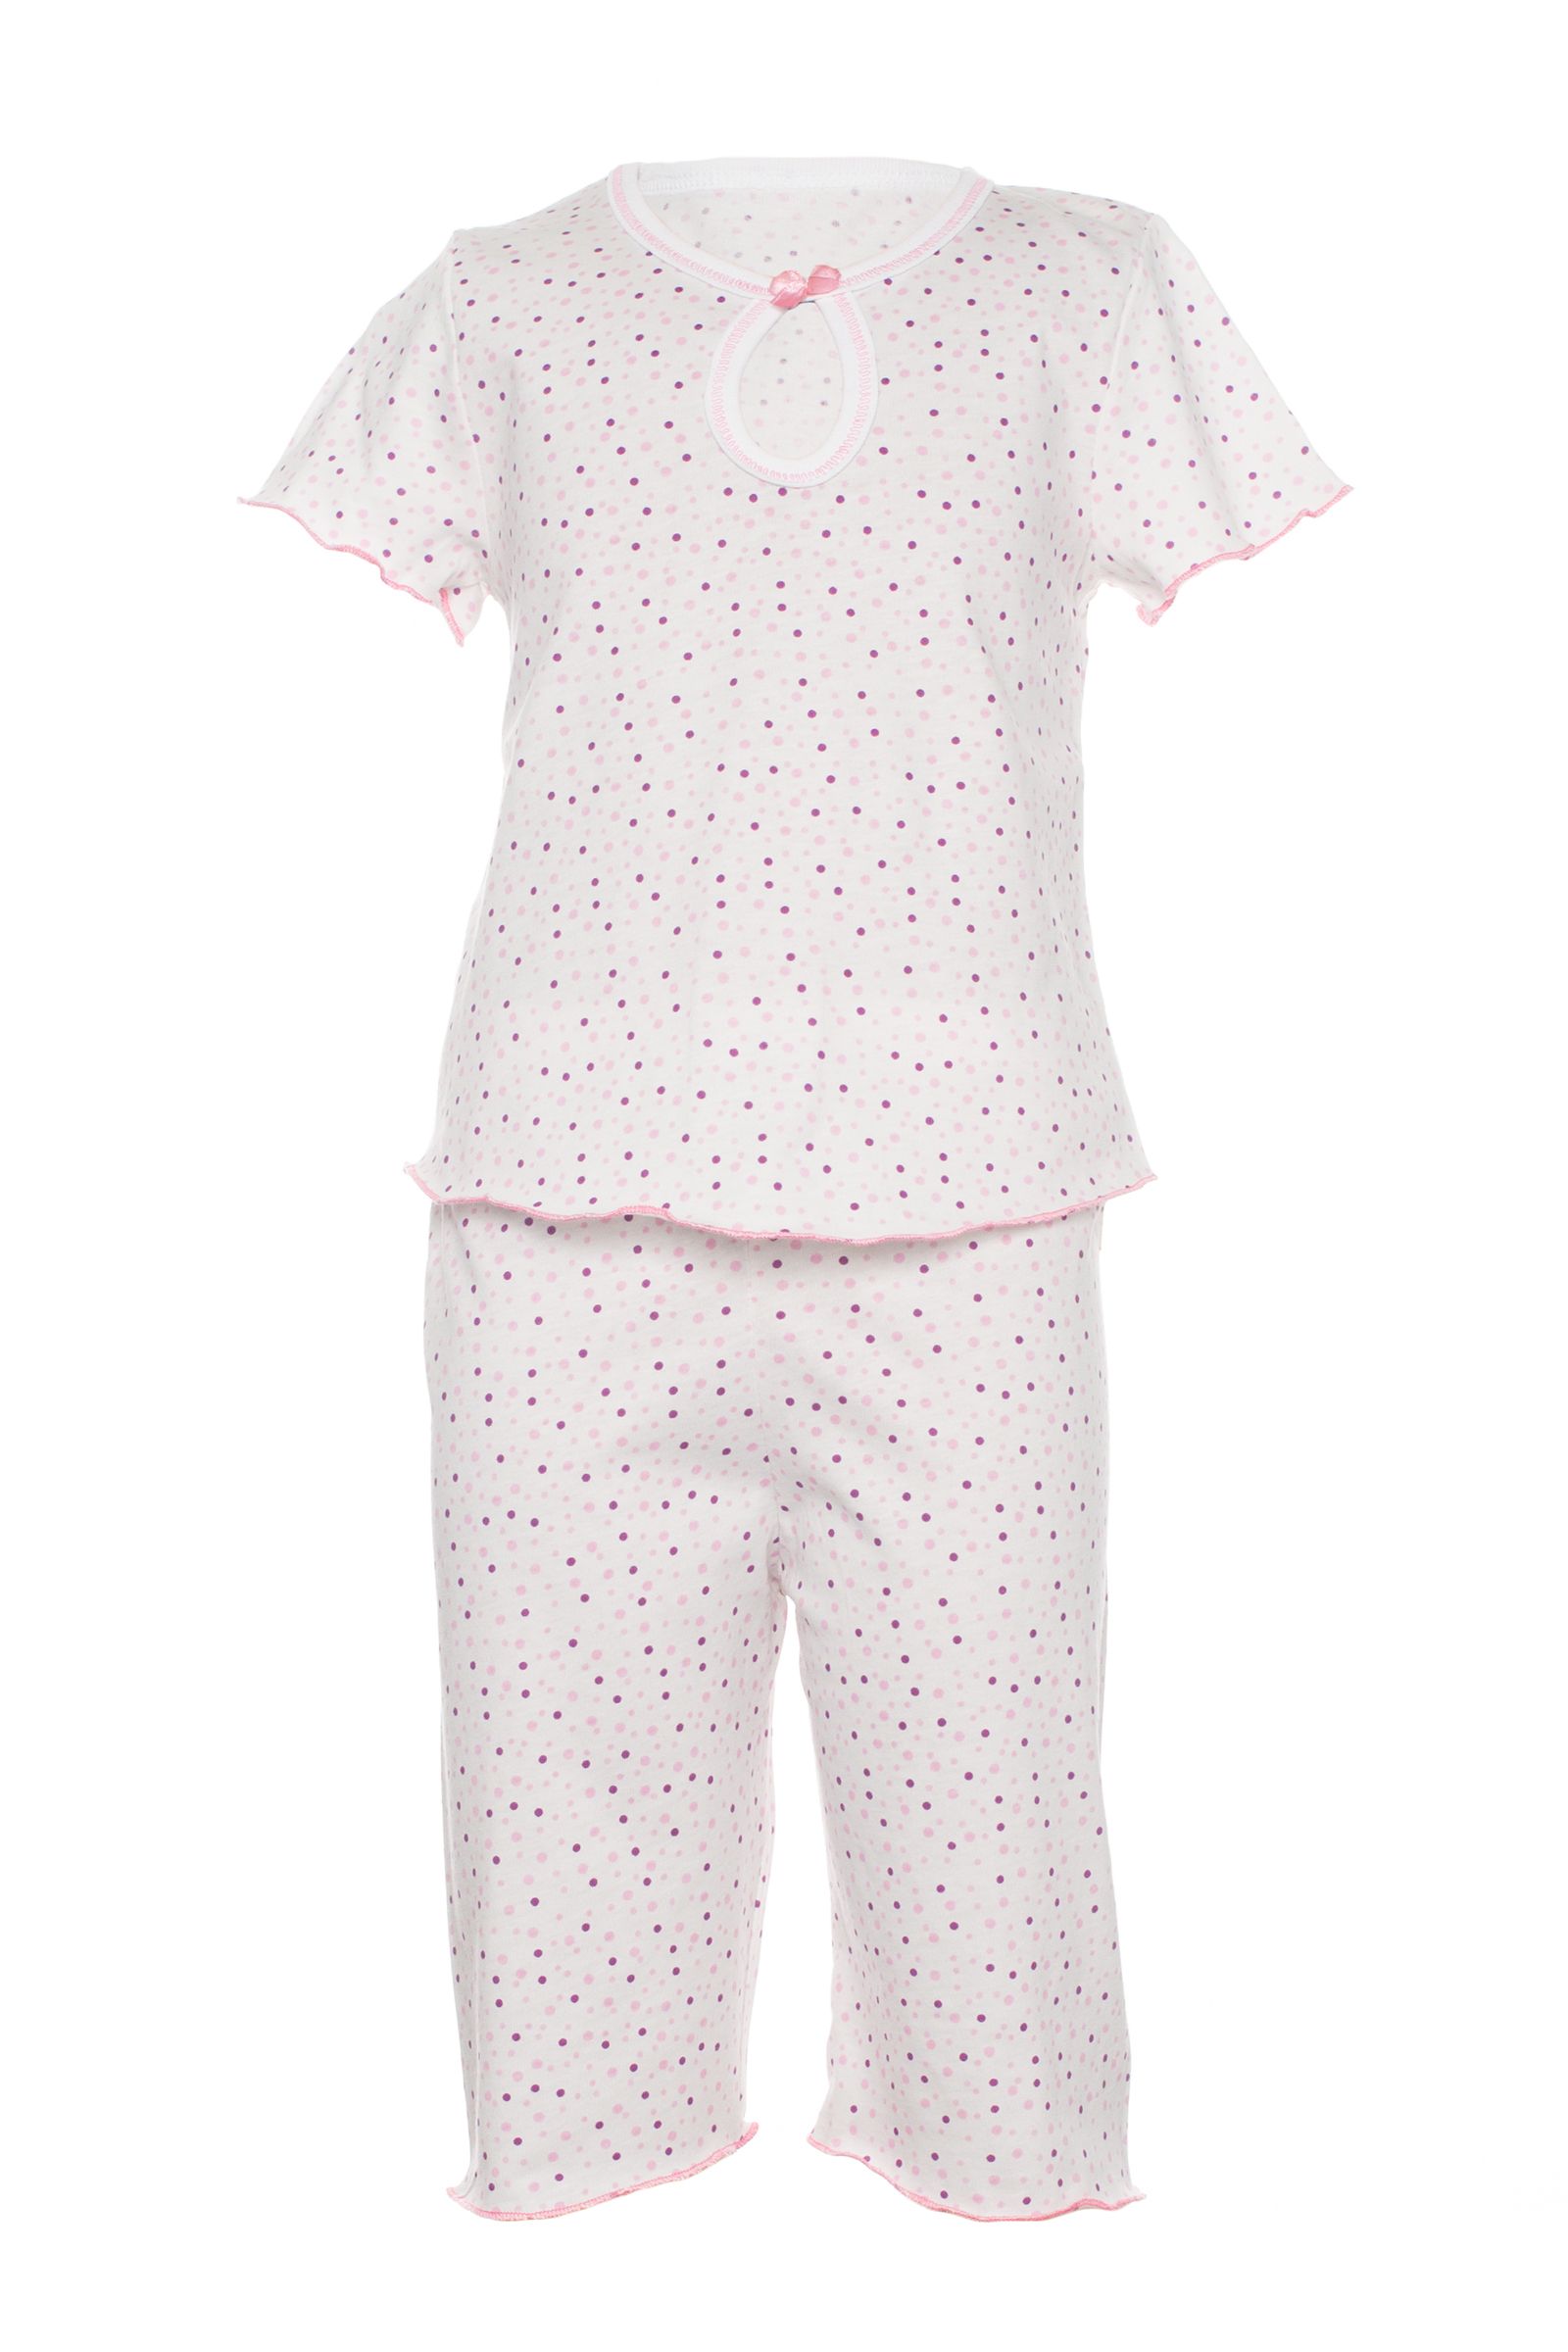 Пижама-ПЖ02-833 оптом от производителя детской одежды 'Алёна'